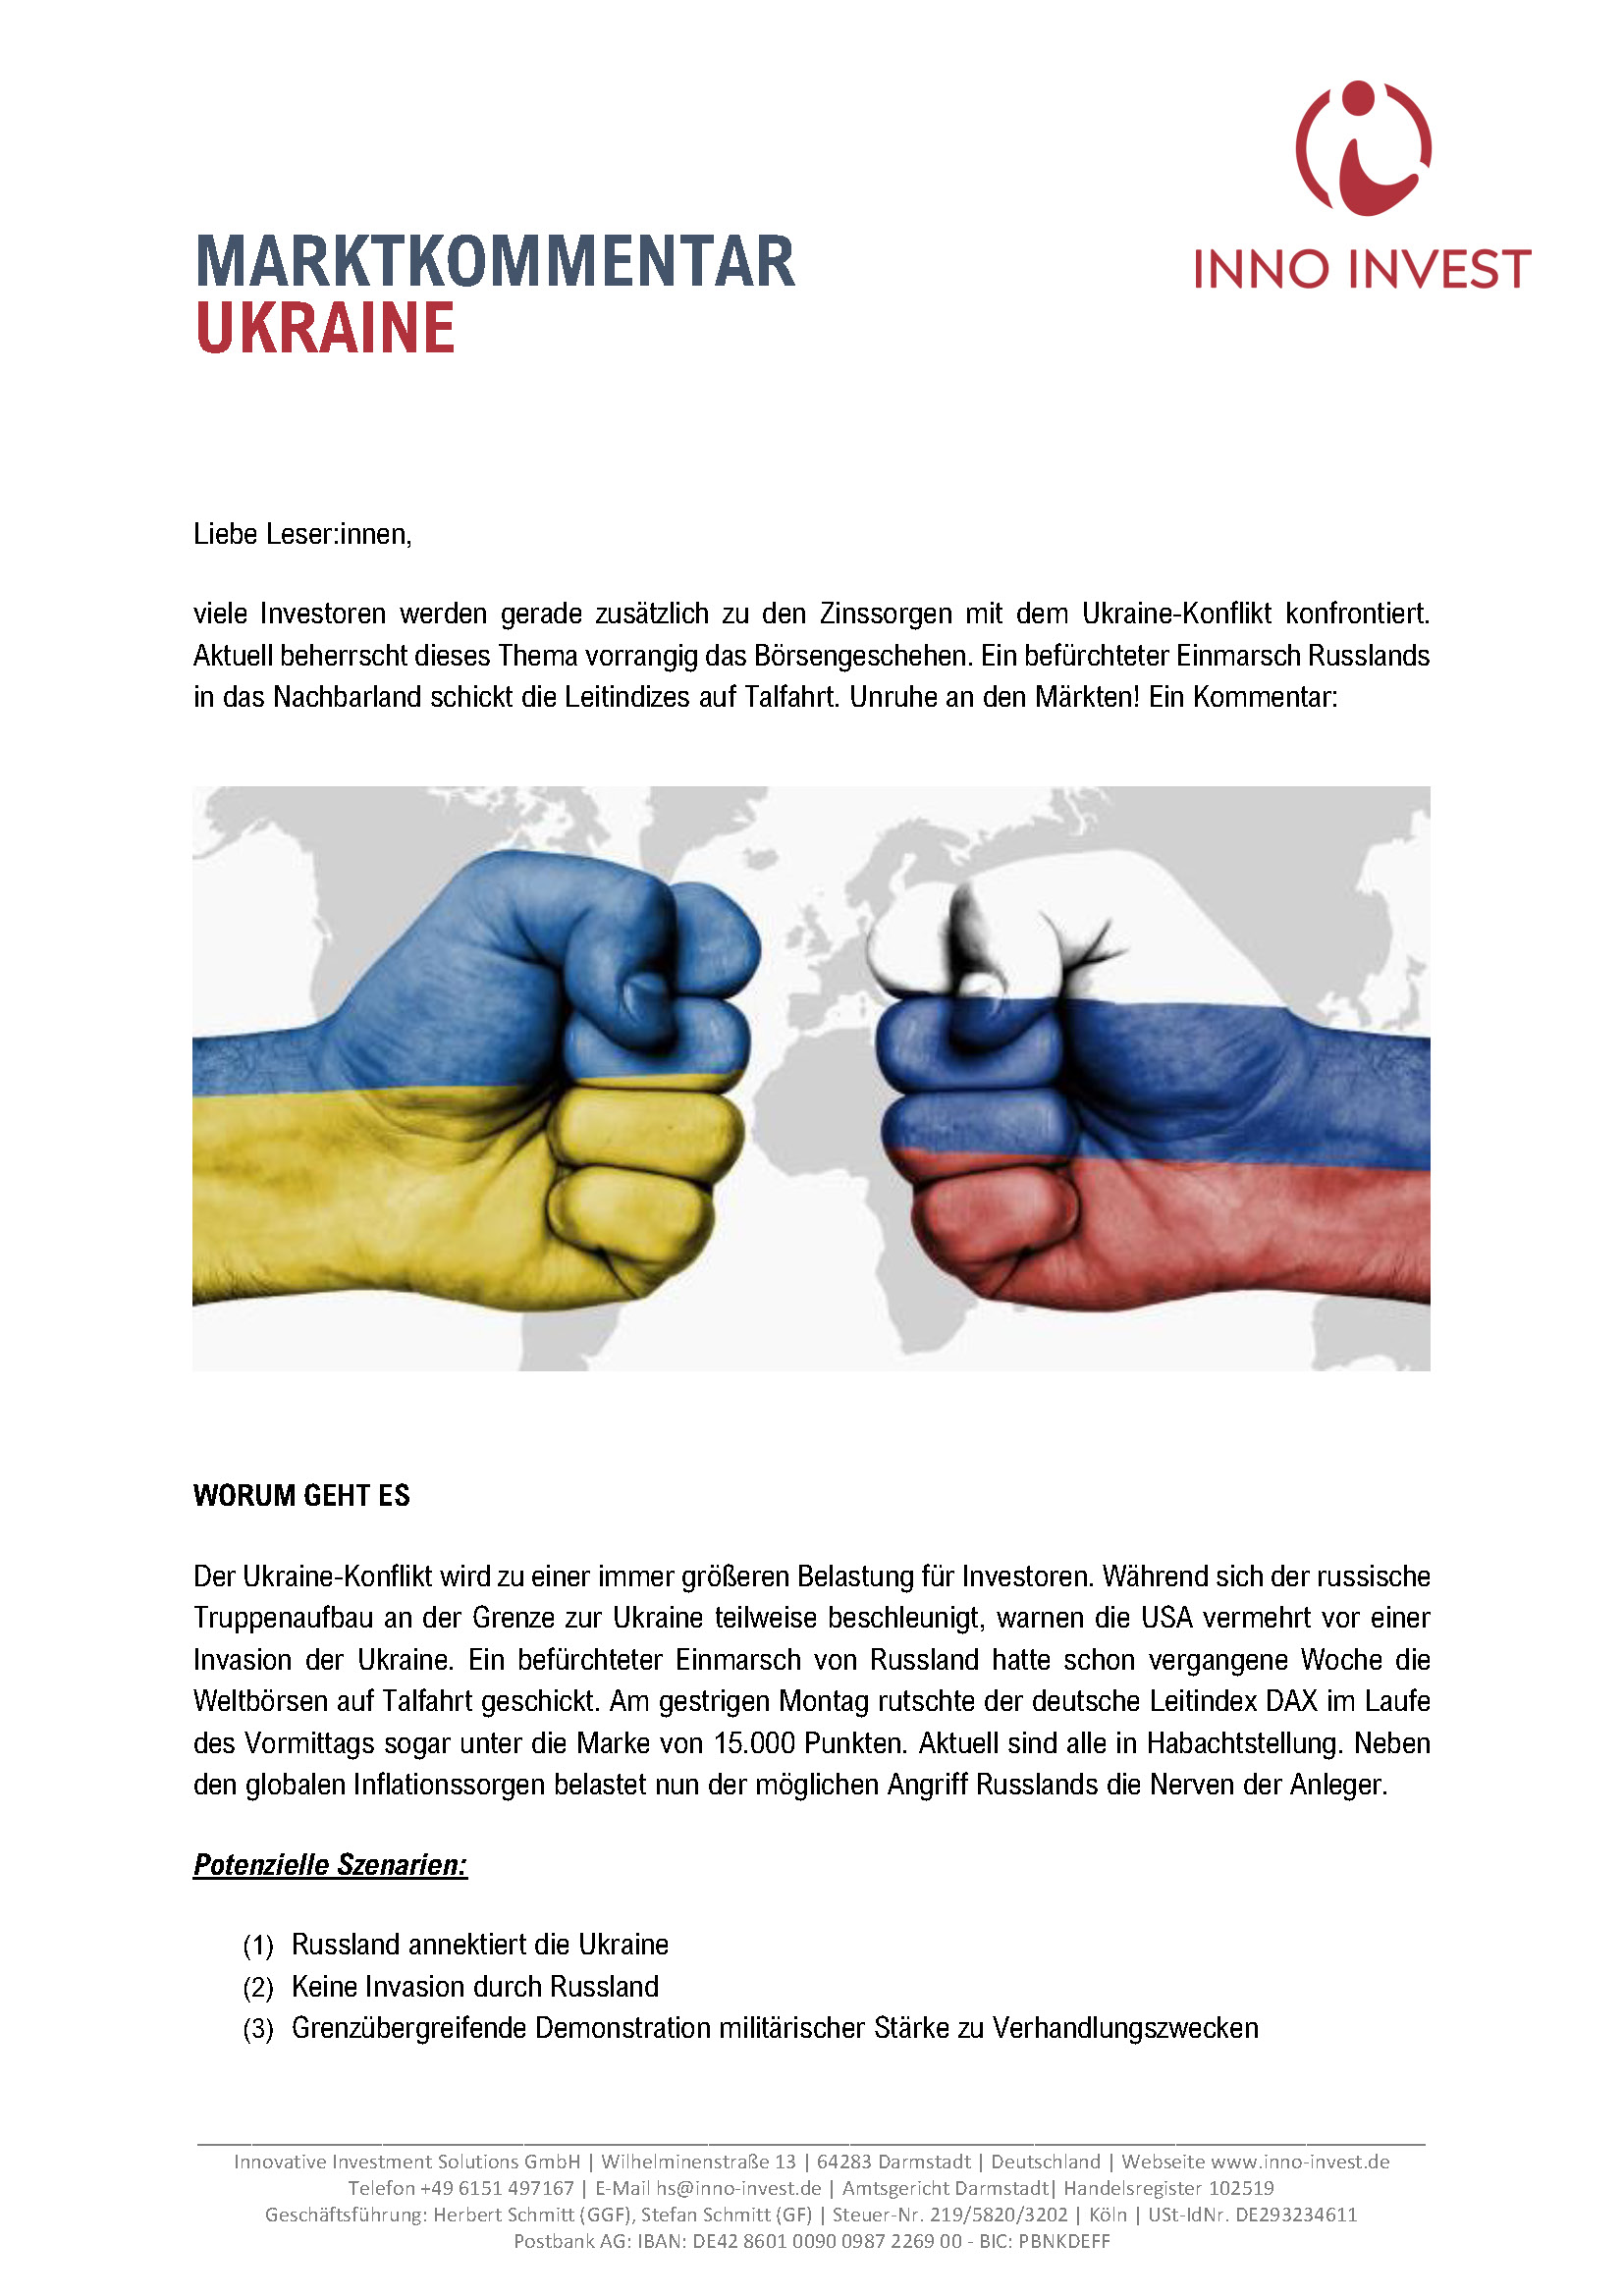 Veröffentlichtung Sonderkommentar Inno Invest Ukraine-Konflikt